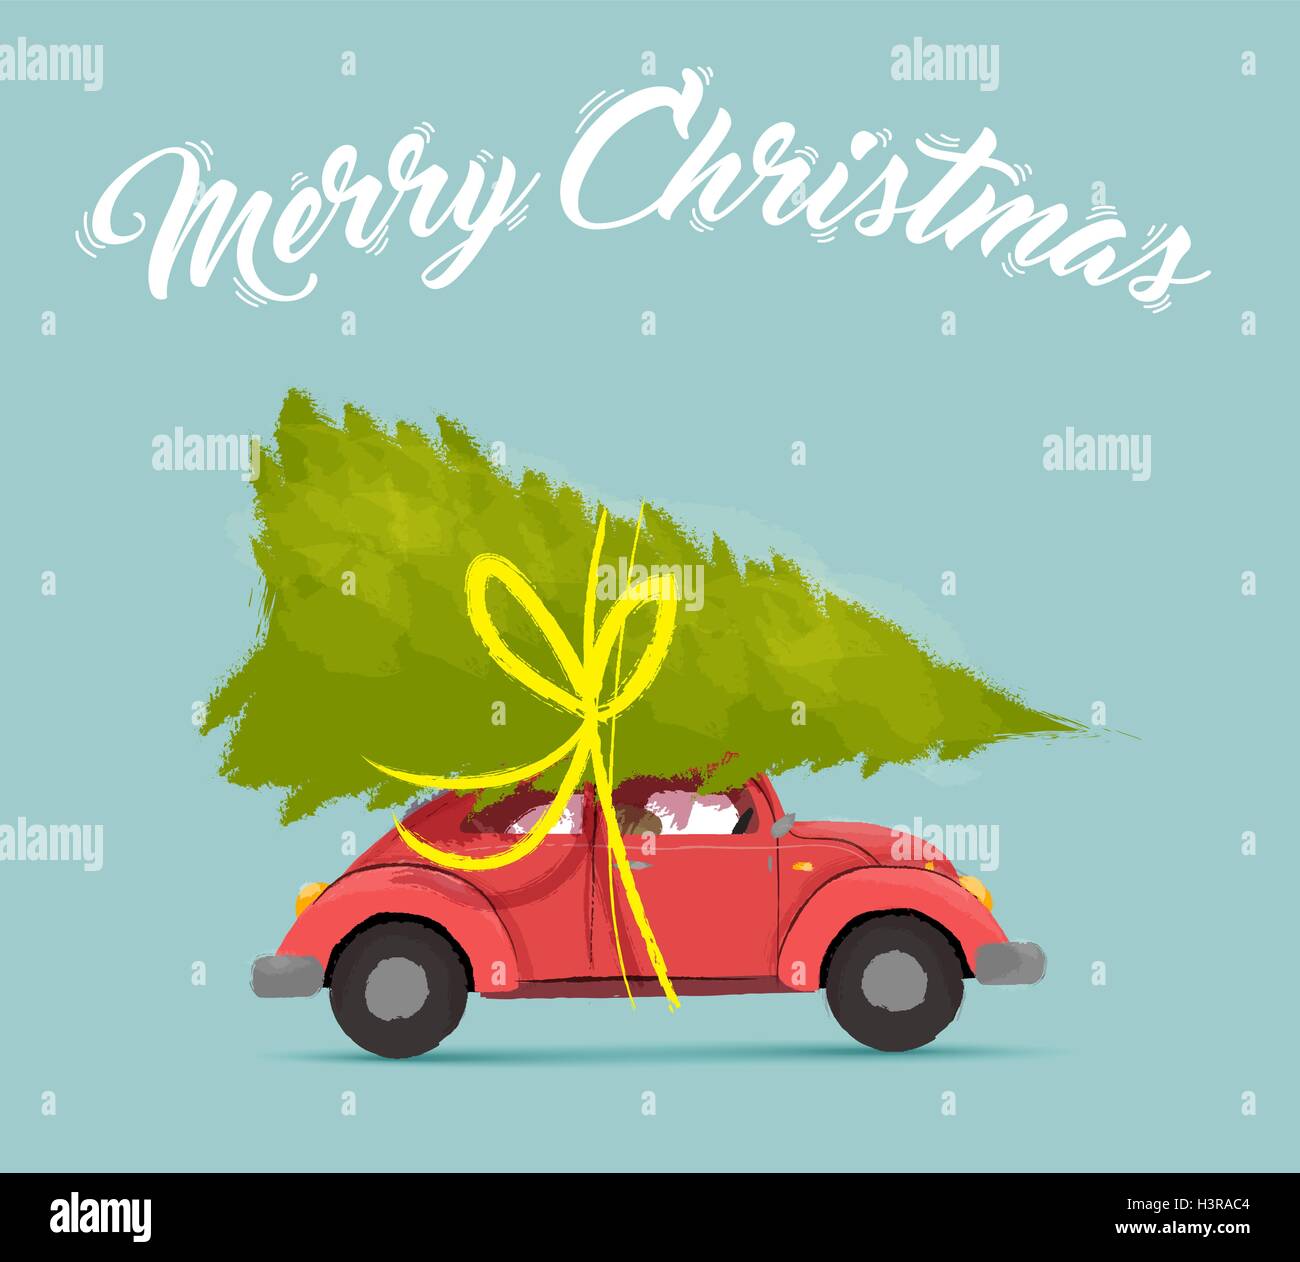 Merry Christmas greeting card illustrazione di vintage auto rossa con il natale pino dono sul tetto. EPS10 vettore. Illustrazione Vettoriale